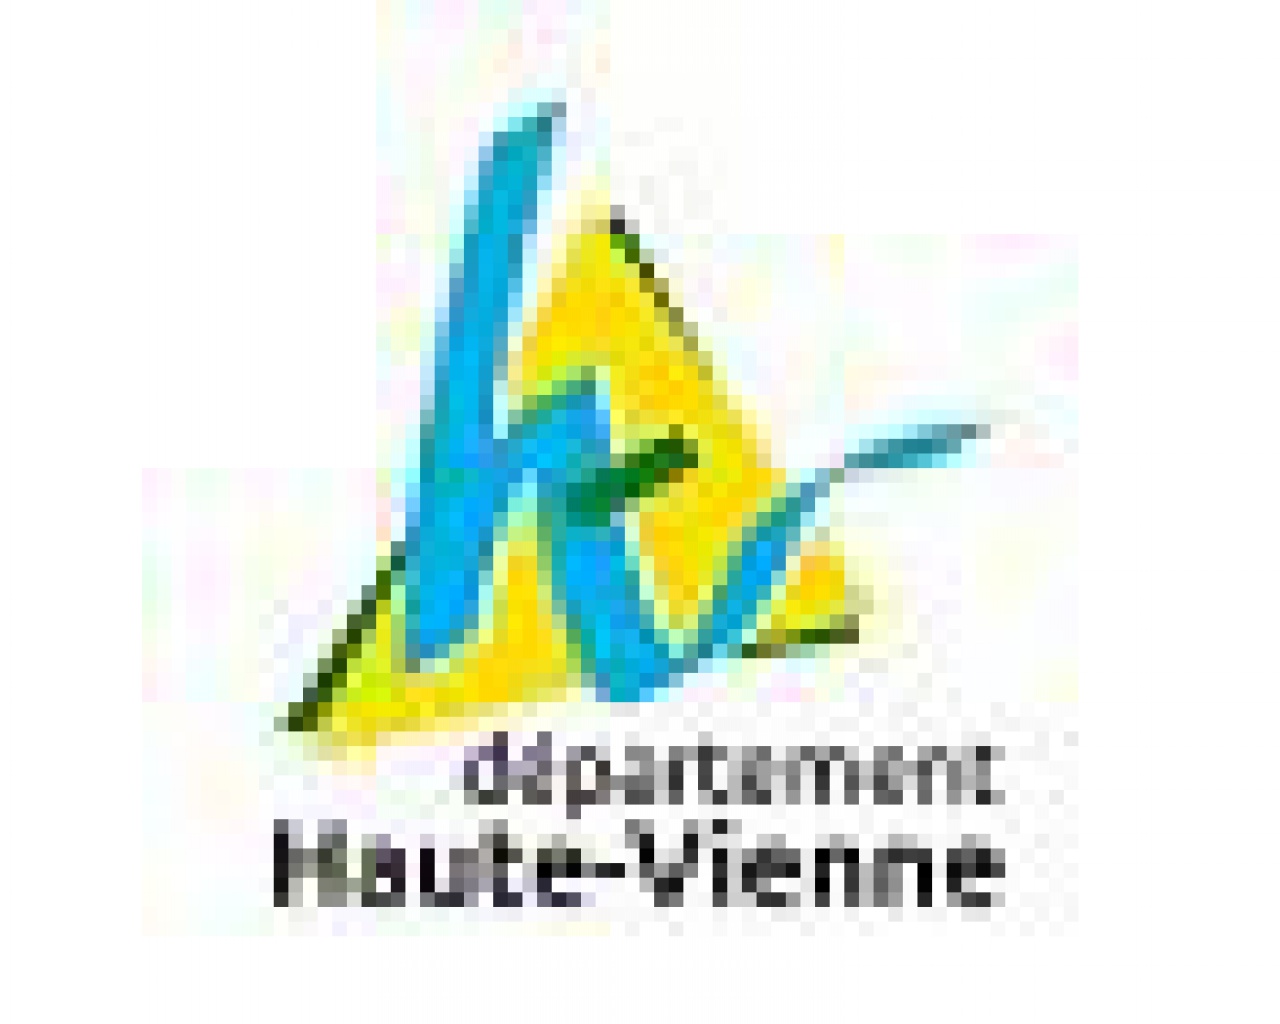 Département Haute Vienne